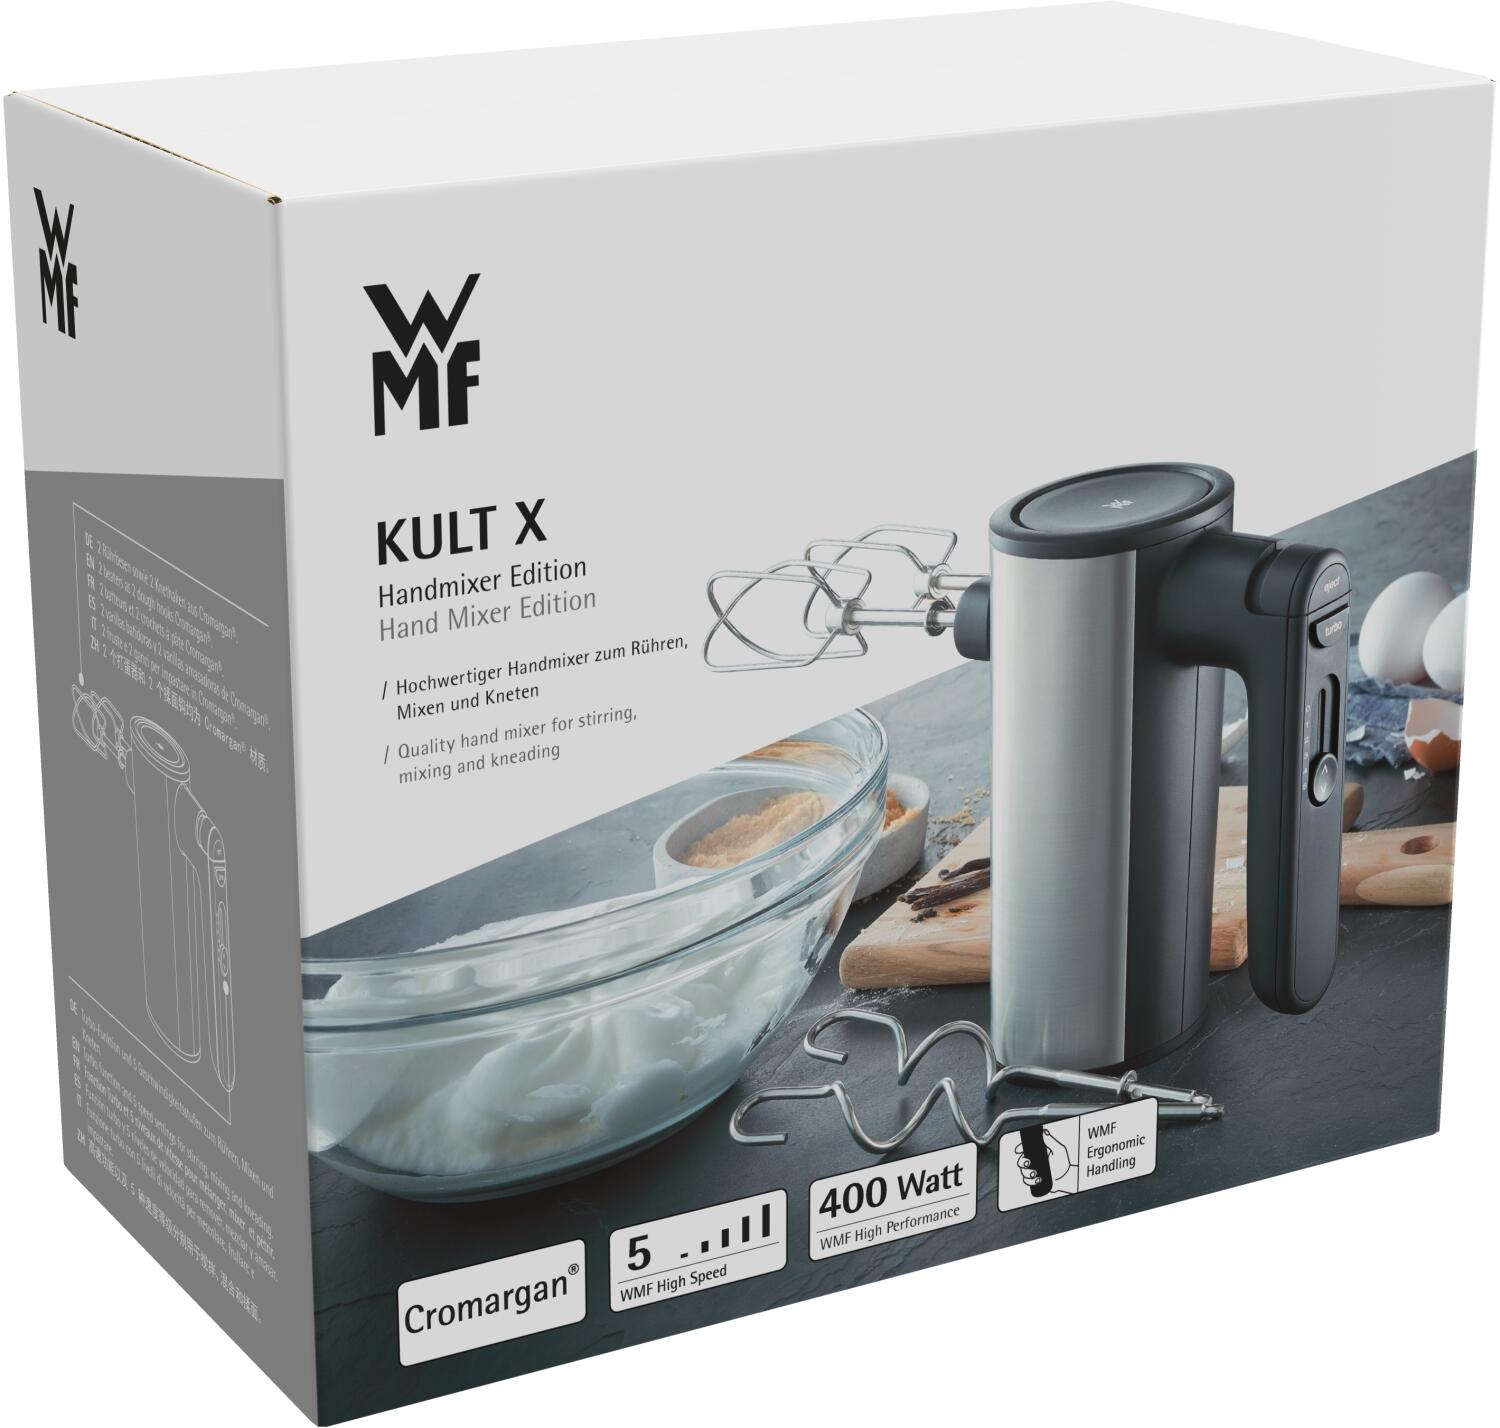 WMF X kaufen Kult KochForm bei Handmixer